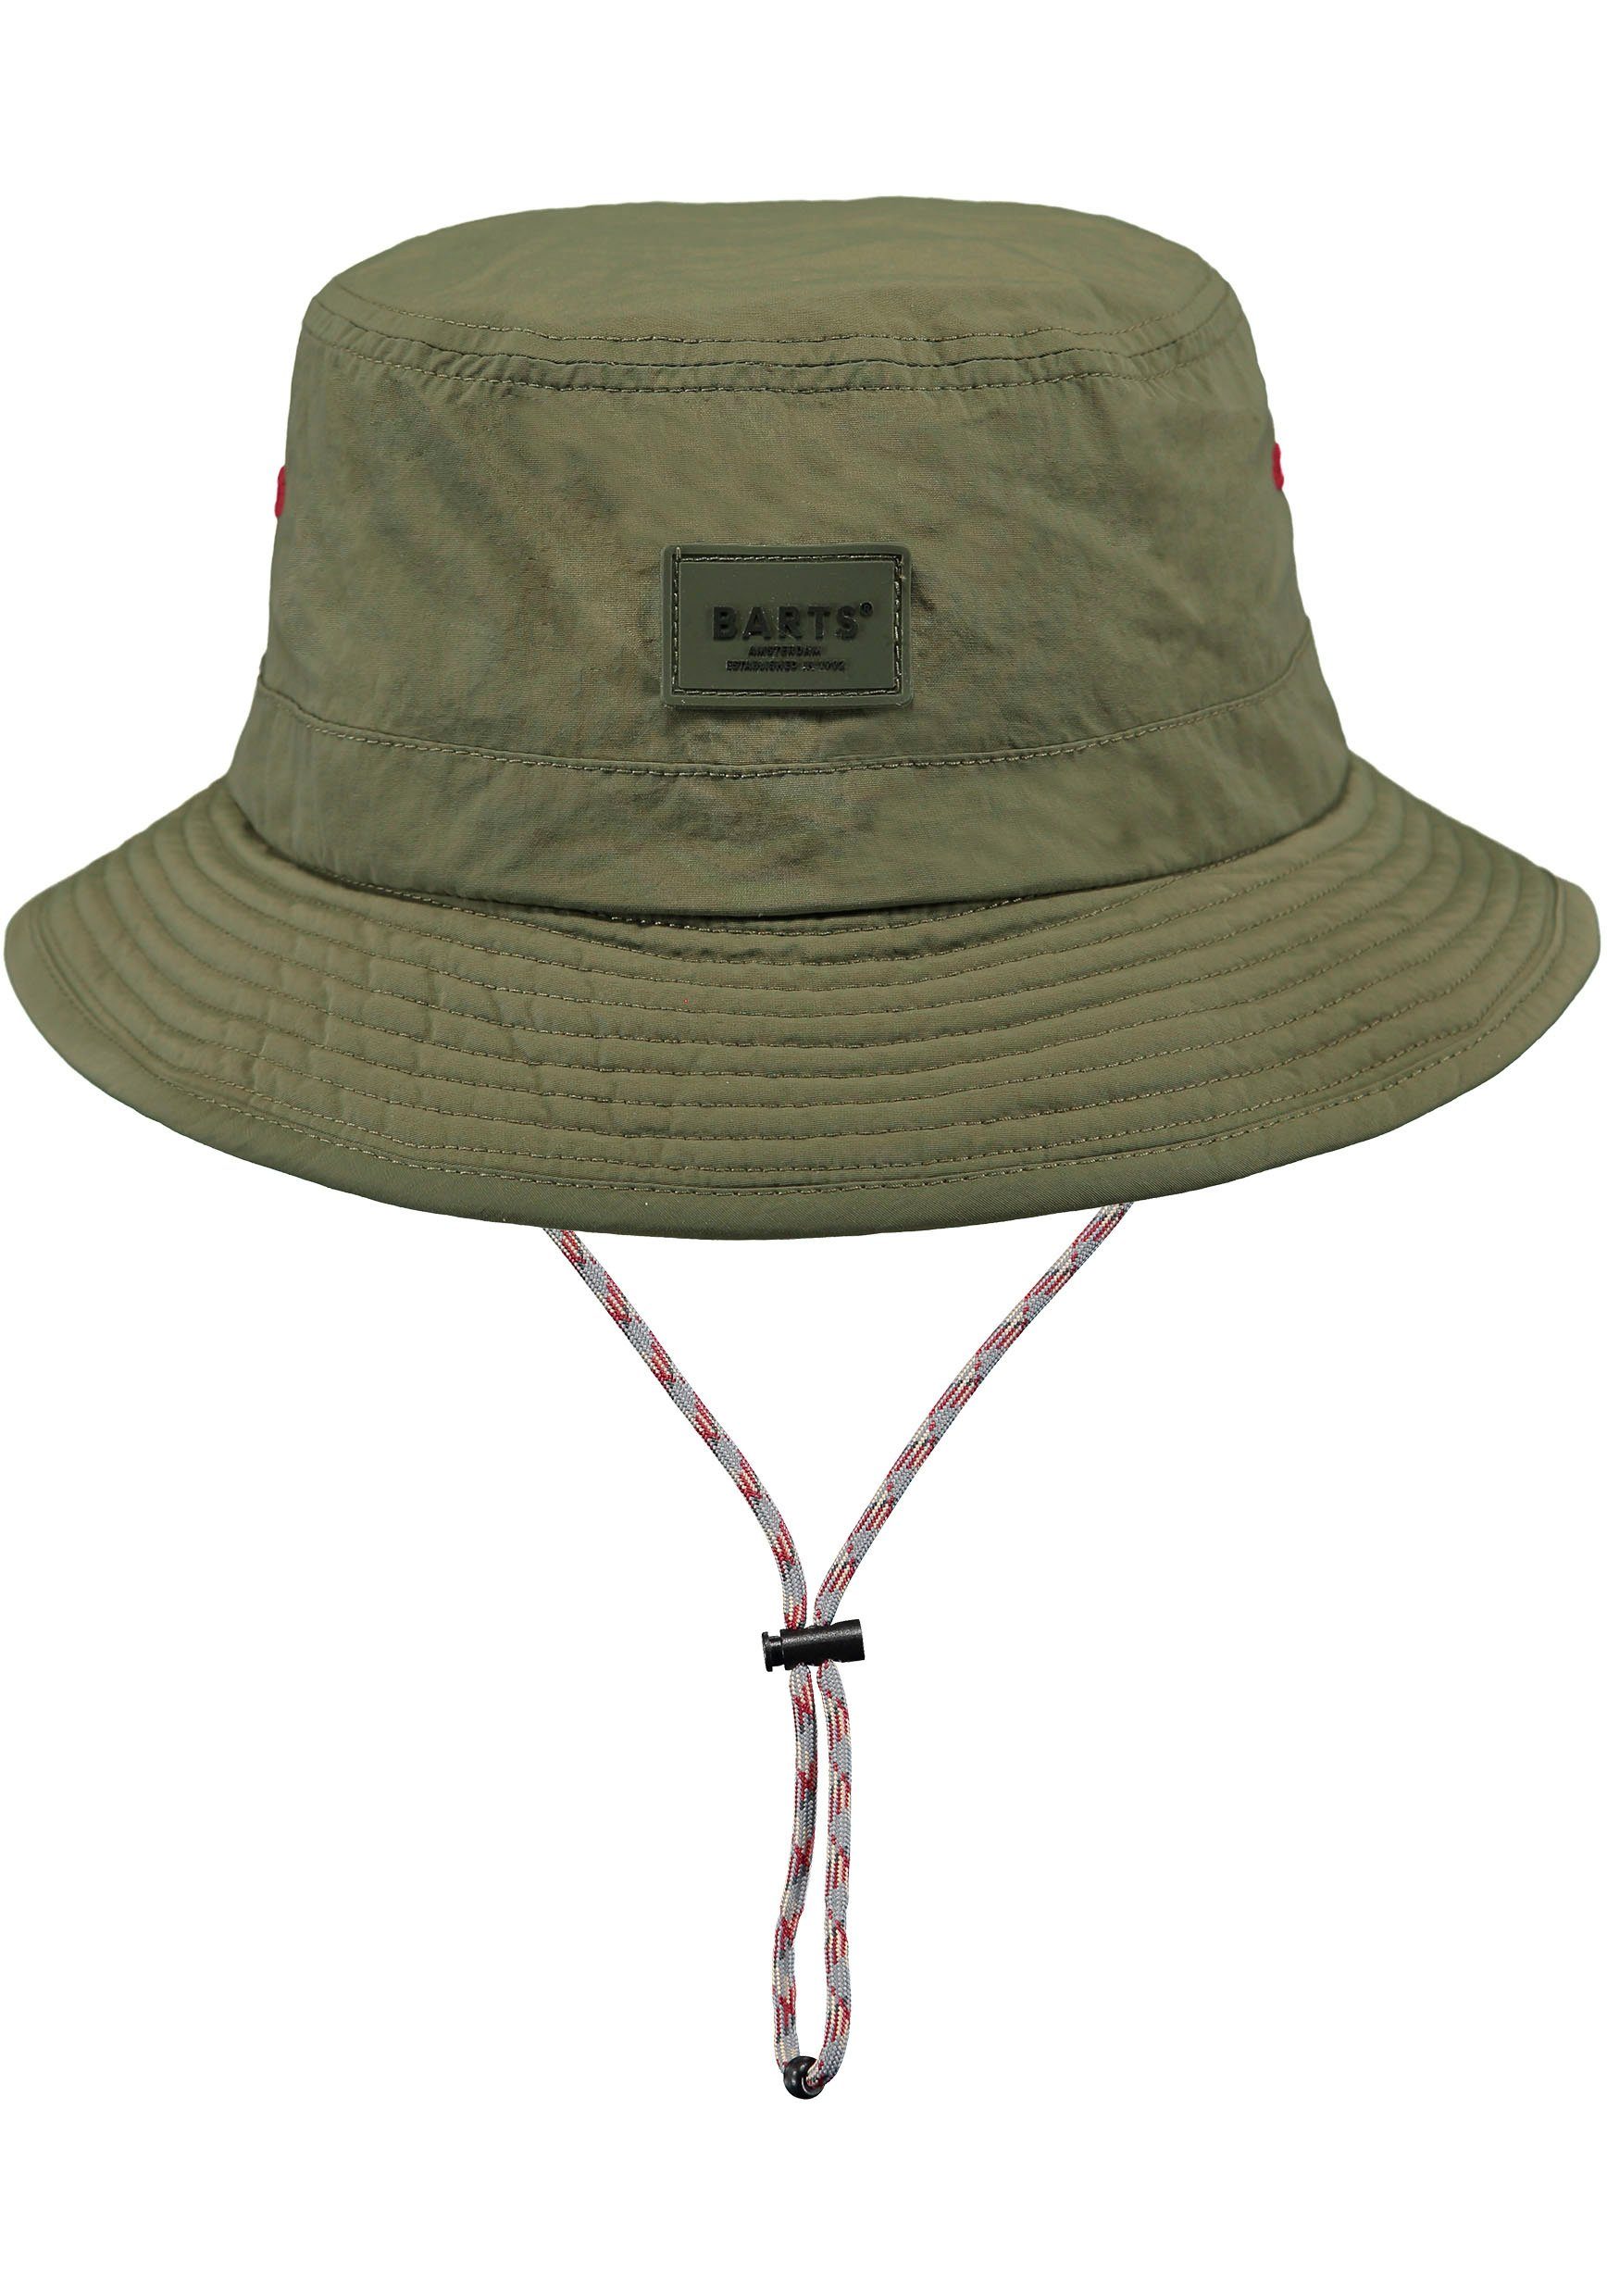 verstellbare innenliegendes olivgrün Passform durch Hutband mit Barts Bindeband, Fischerhut